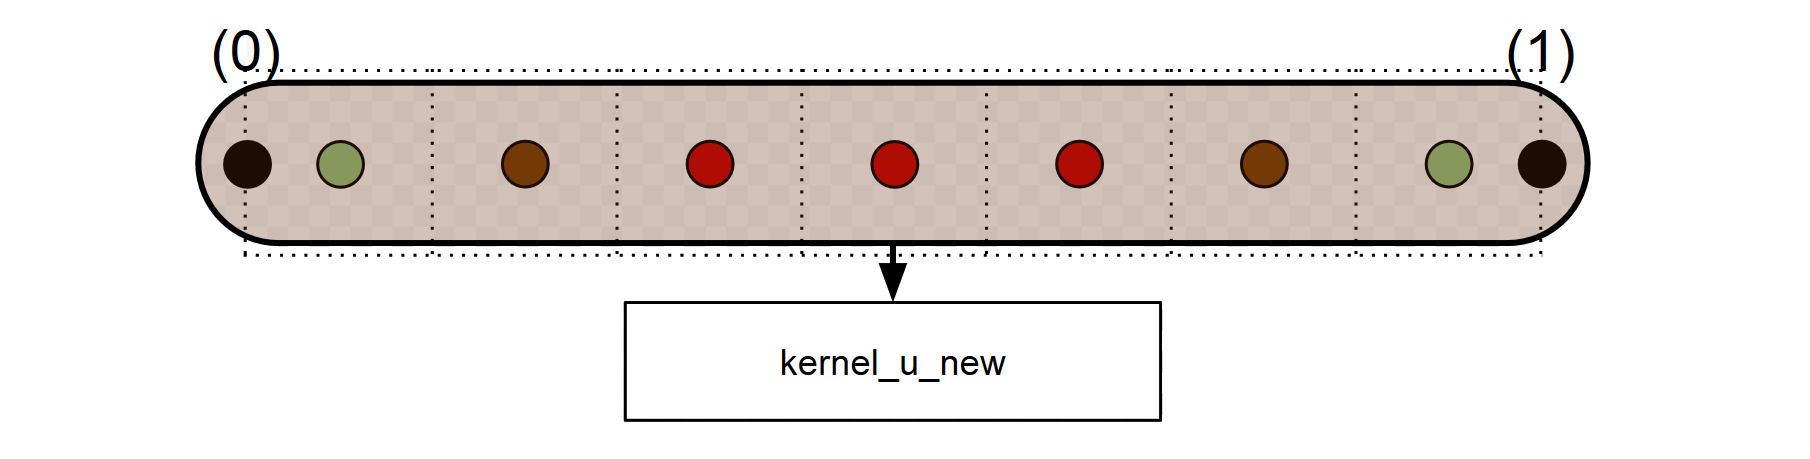 3.4. IMPLEMENTACIÓN EN GPU MEDIANTE CUDA Actualizar los 6 nodos en un kernel aparte.